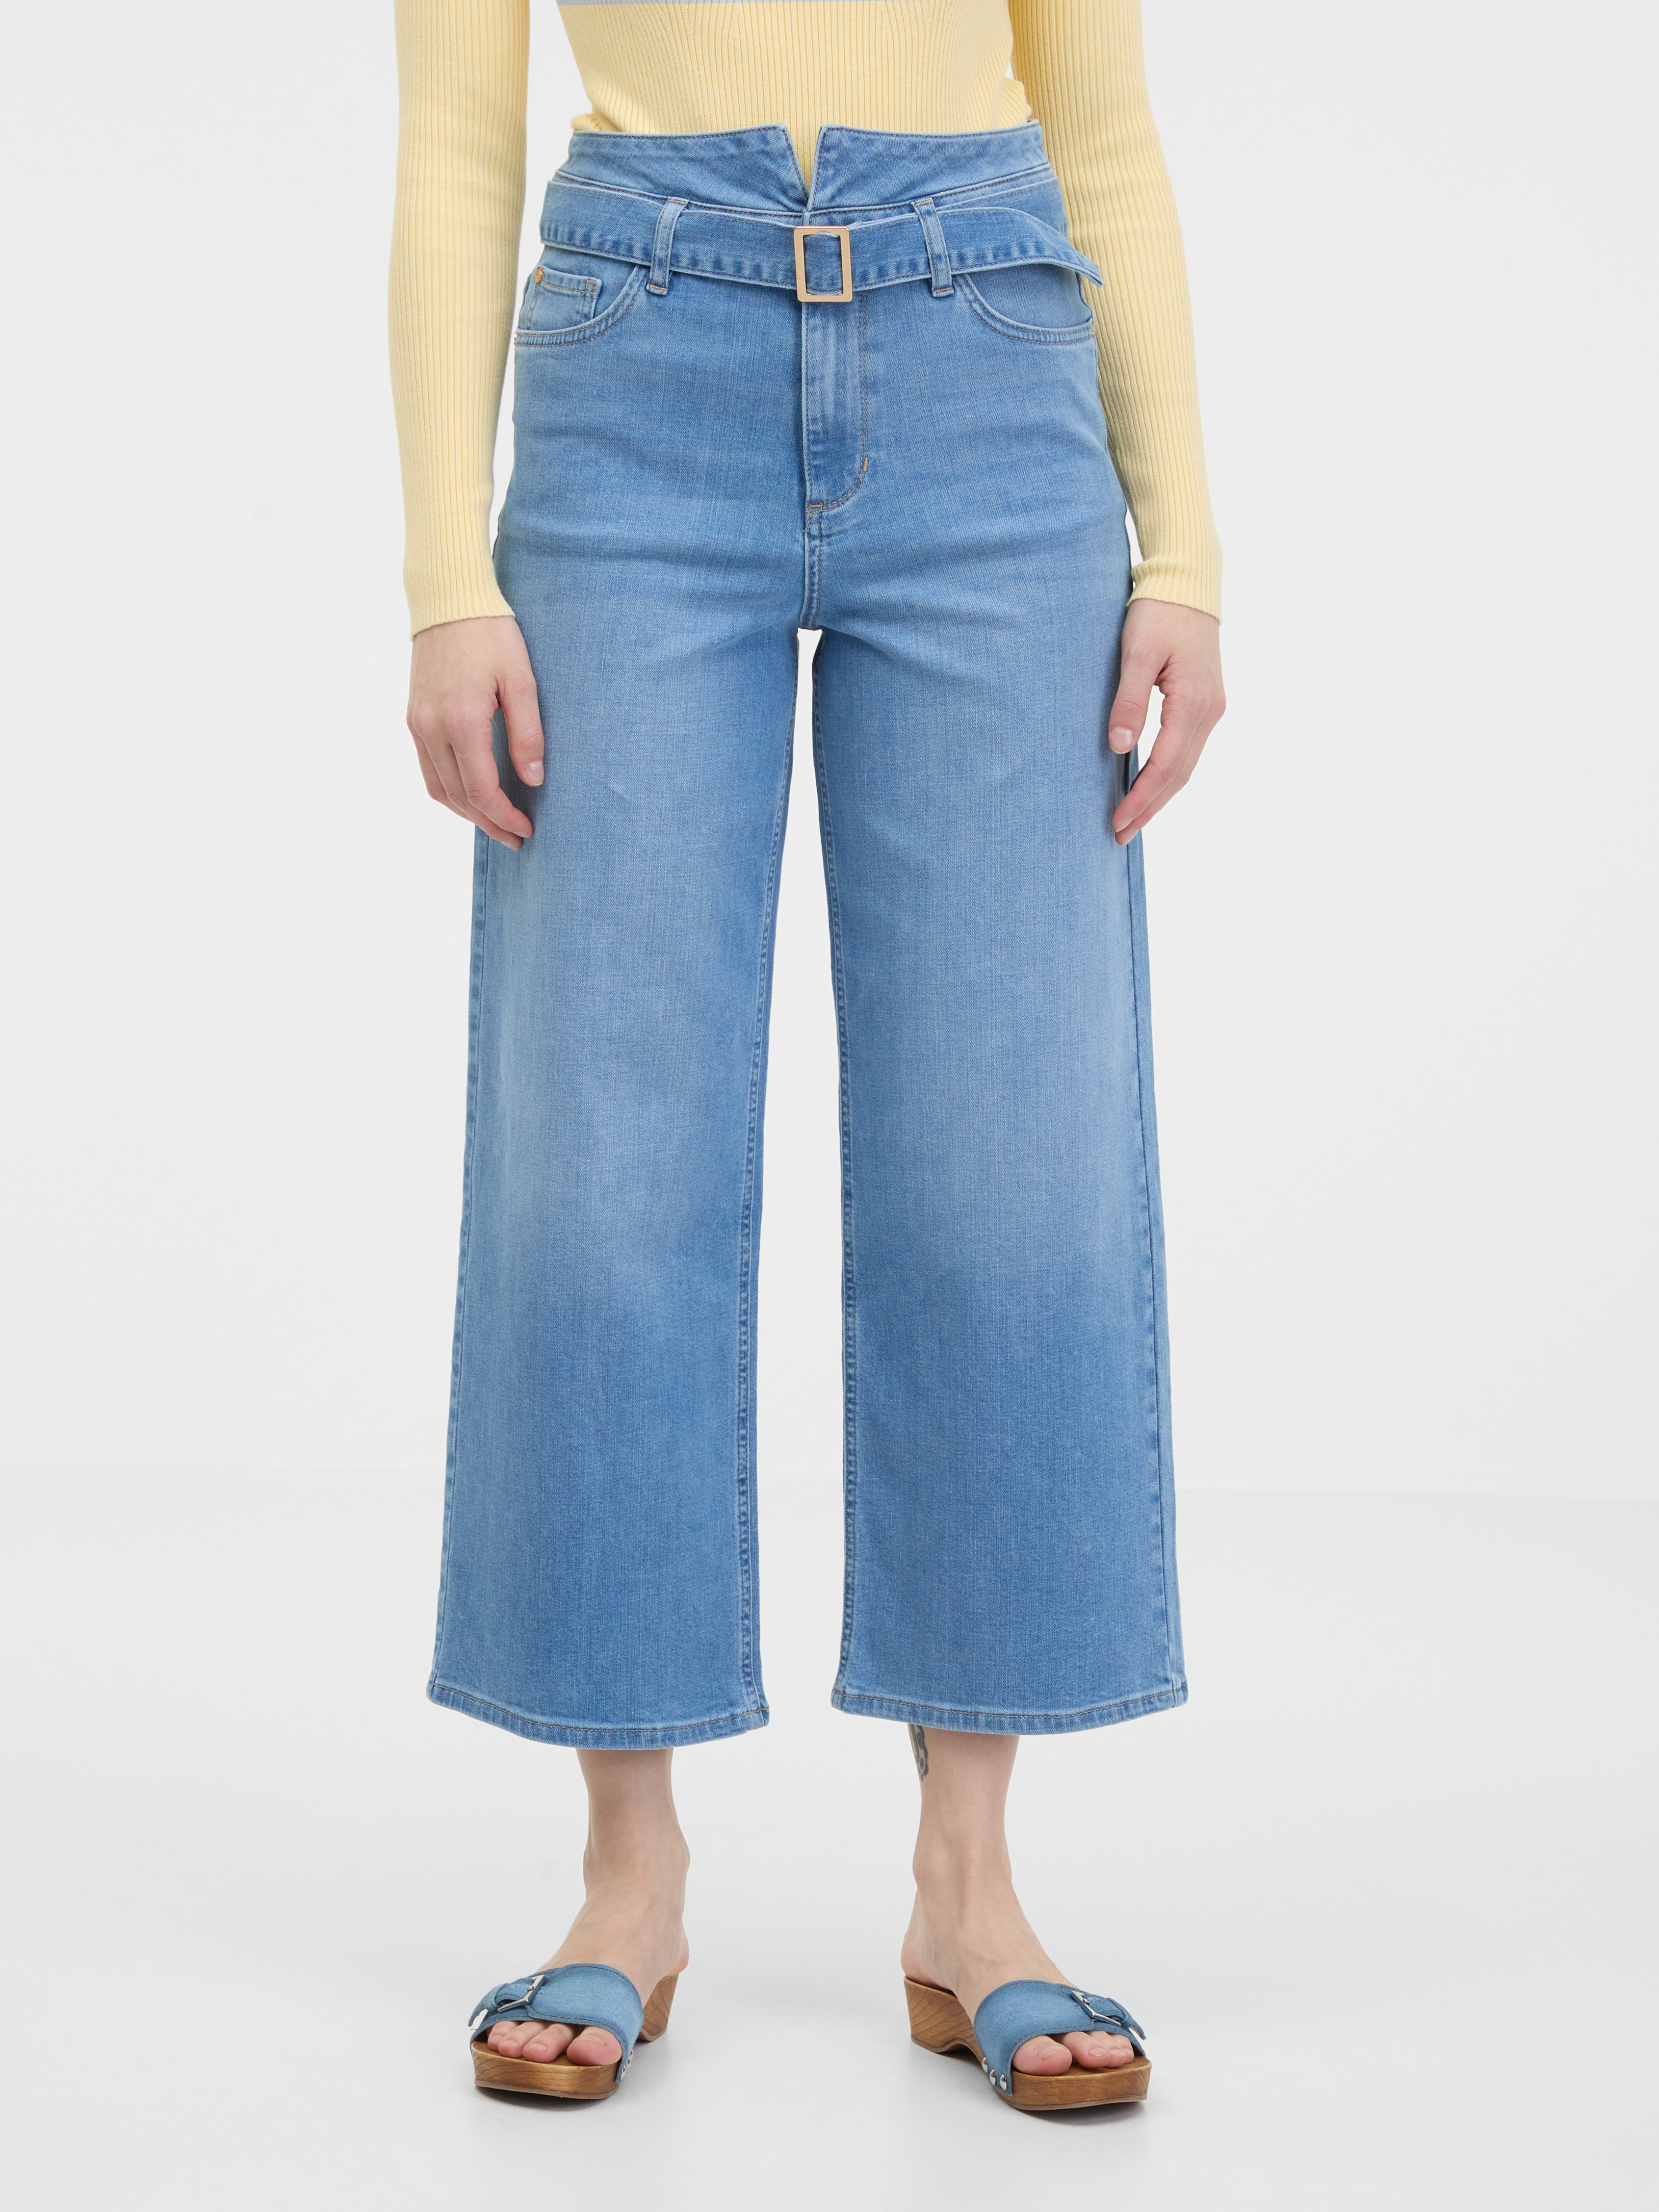 Orsay Light Blue Women's Wide Jeans - Women